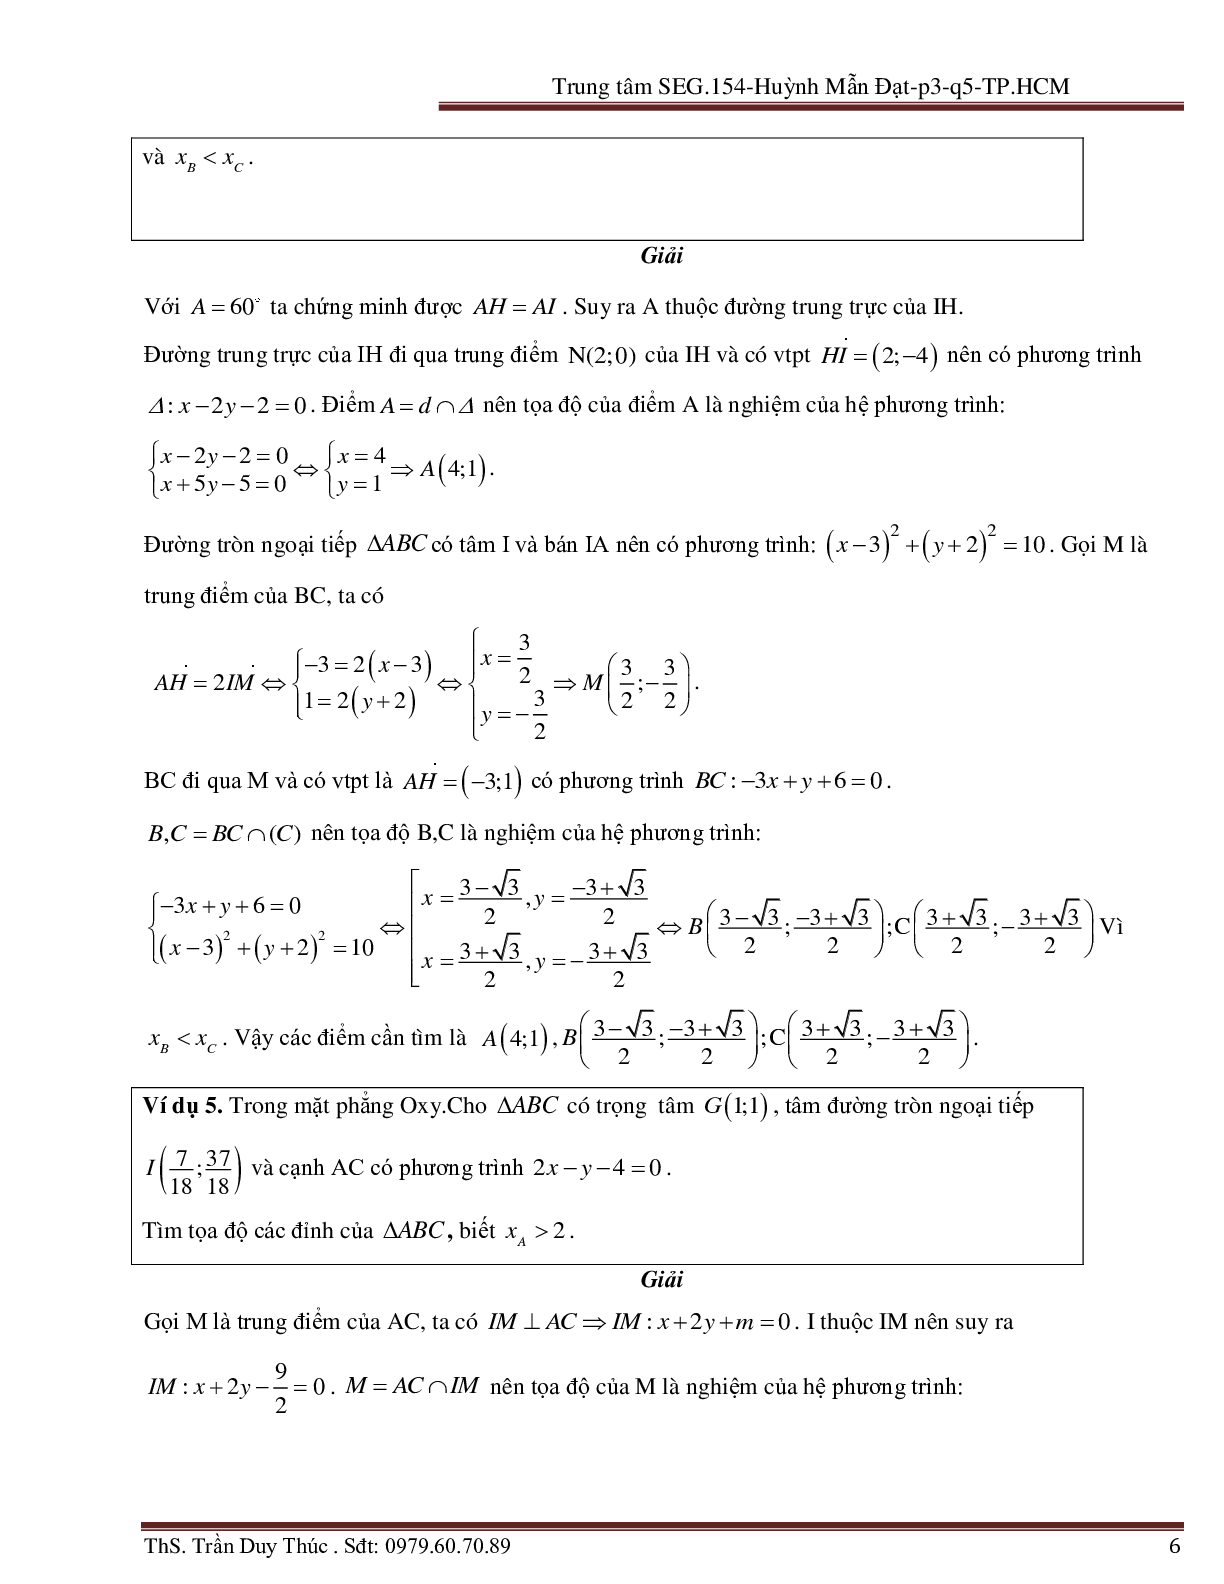 Vận dụng tính chất hình phẳng để giải bài toán Oxy liên quan đến đường tròn (trang 6)